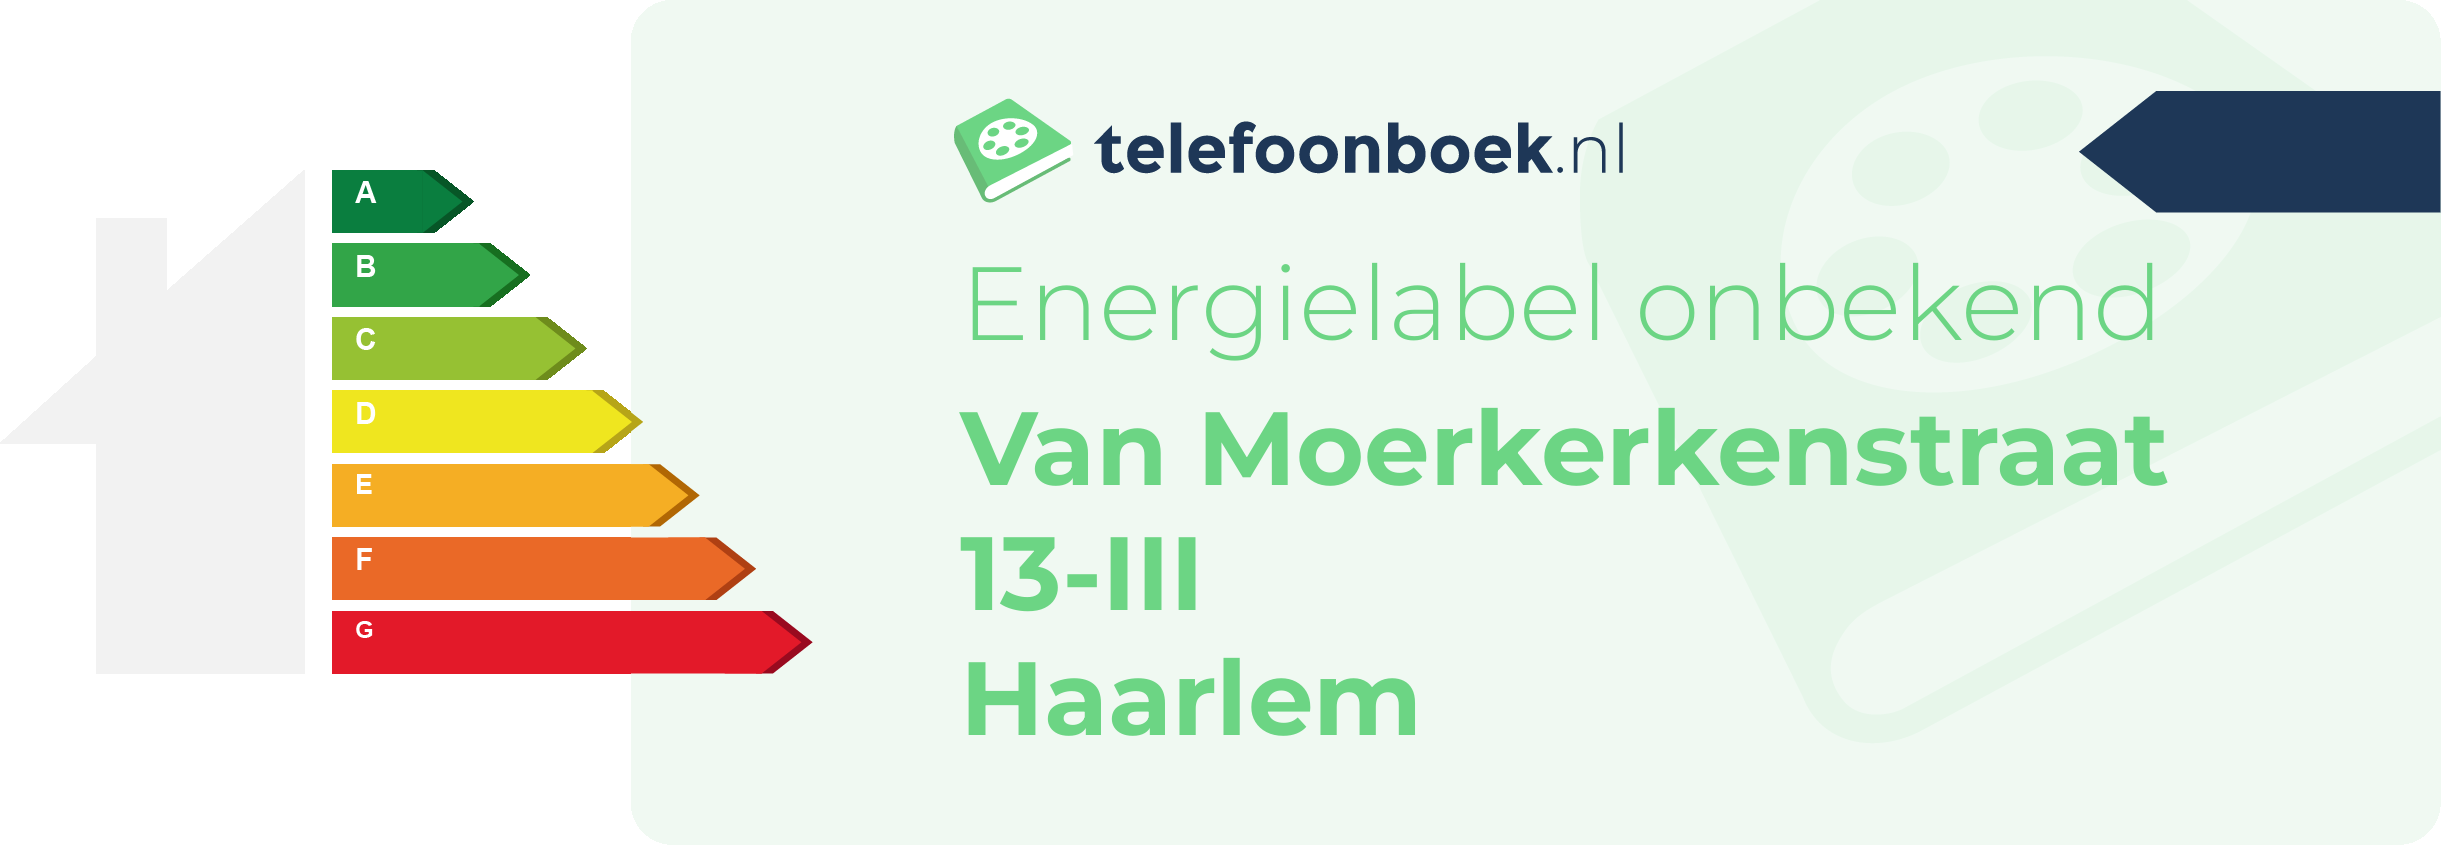 Energielabel Van Moerkerkenstraat 13-III Haarlem